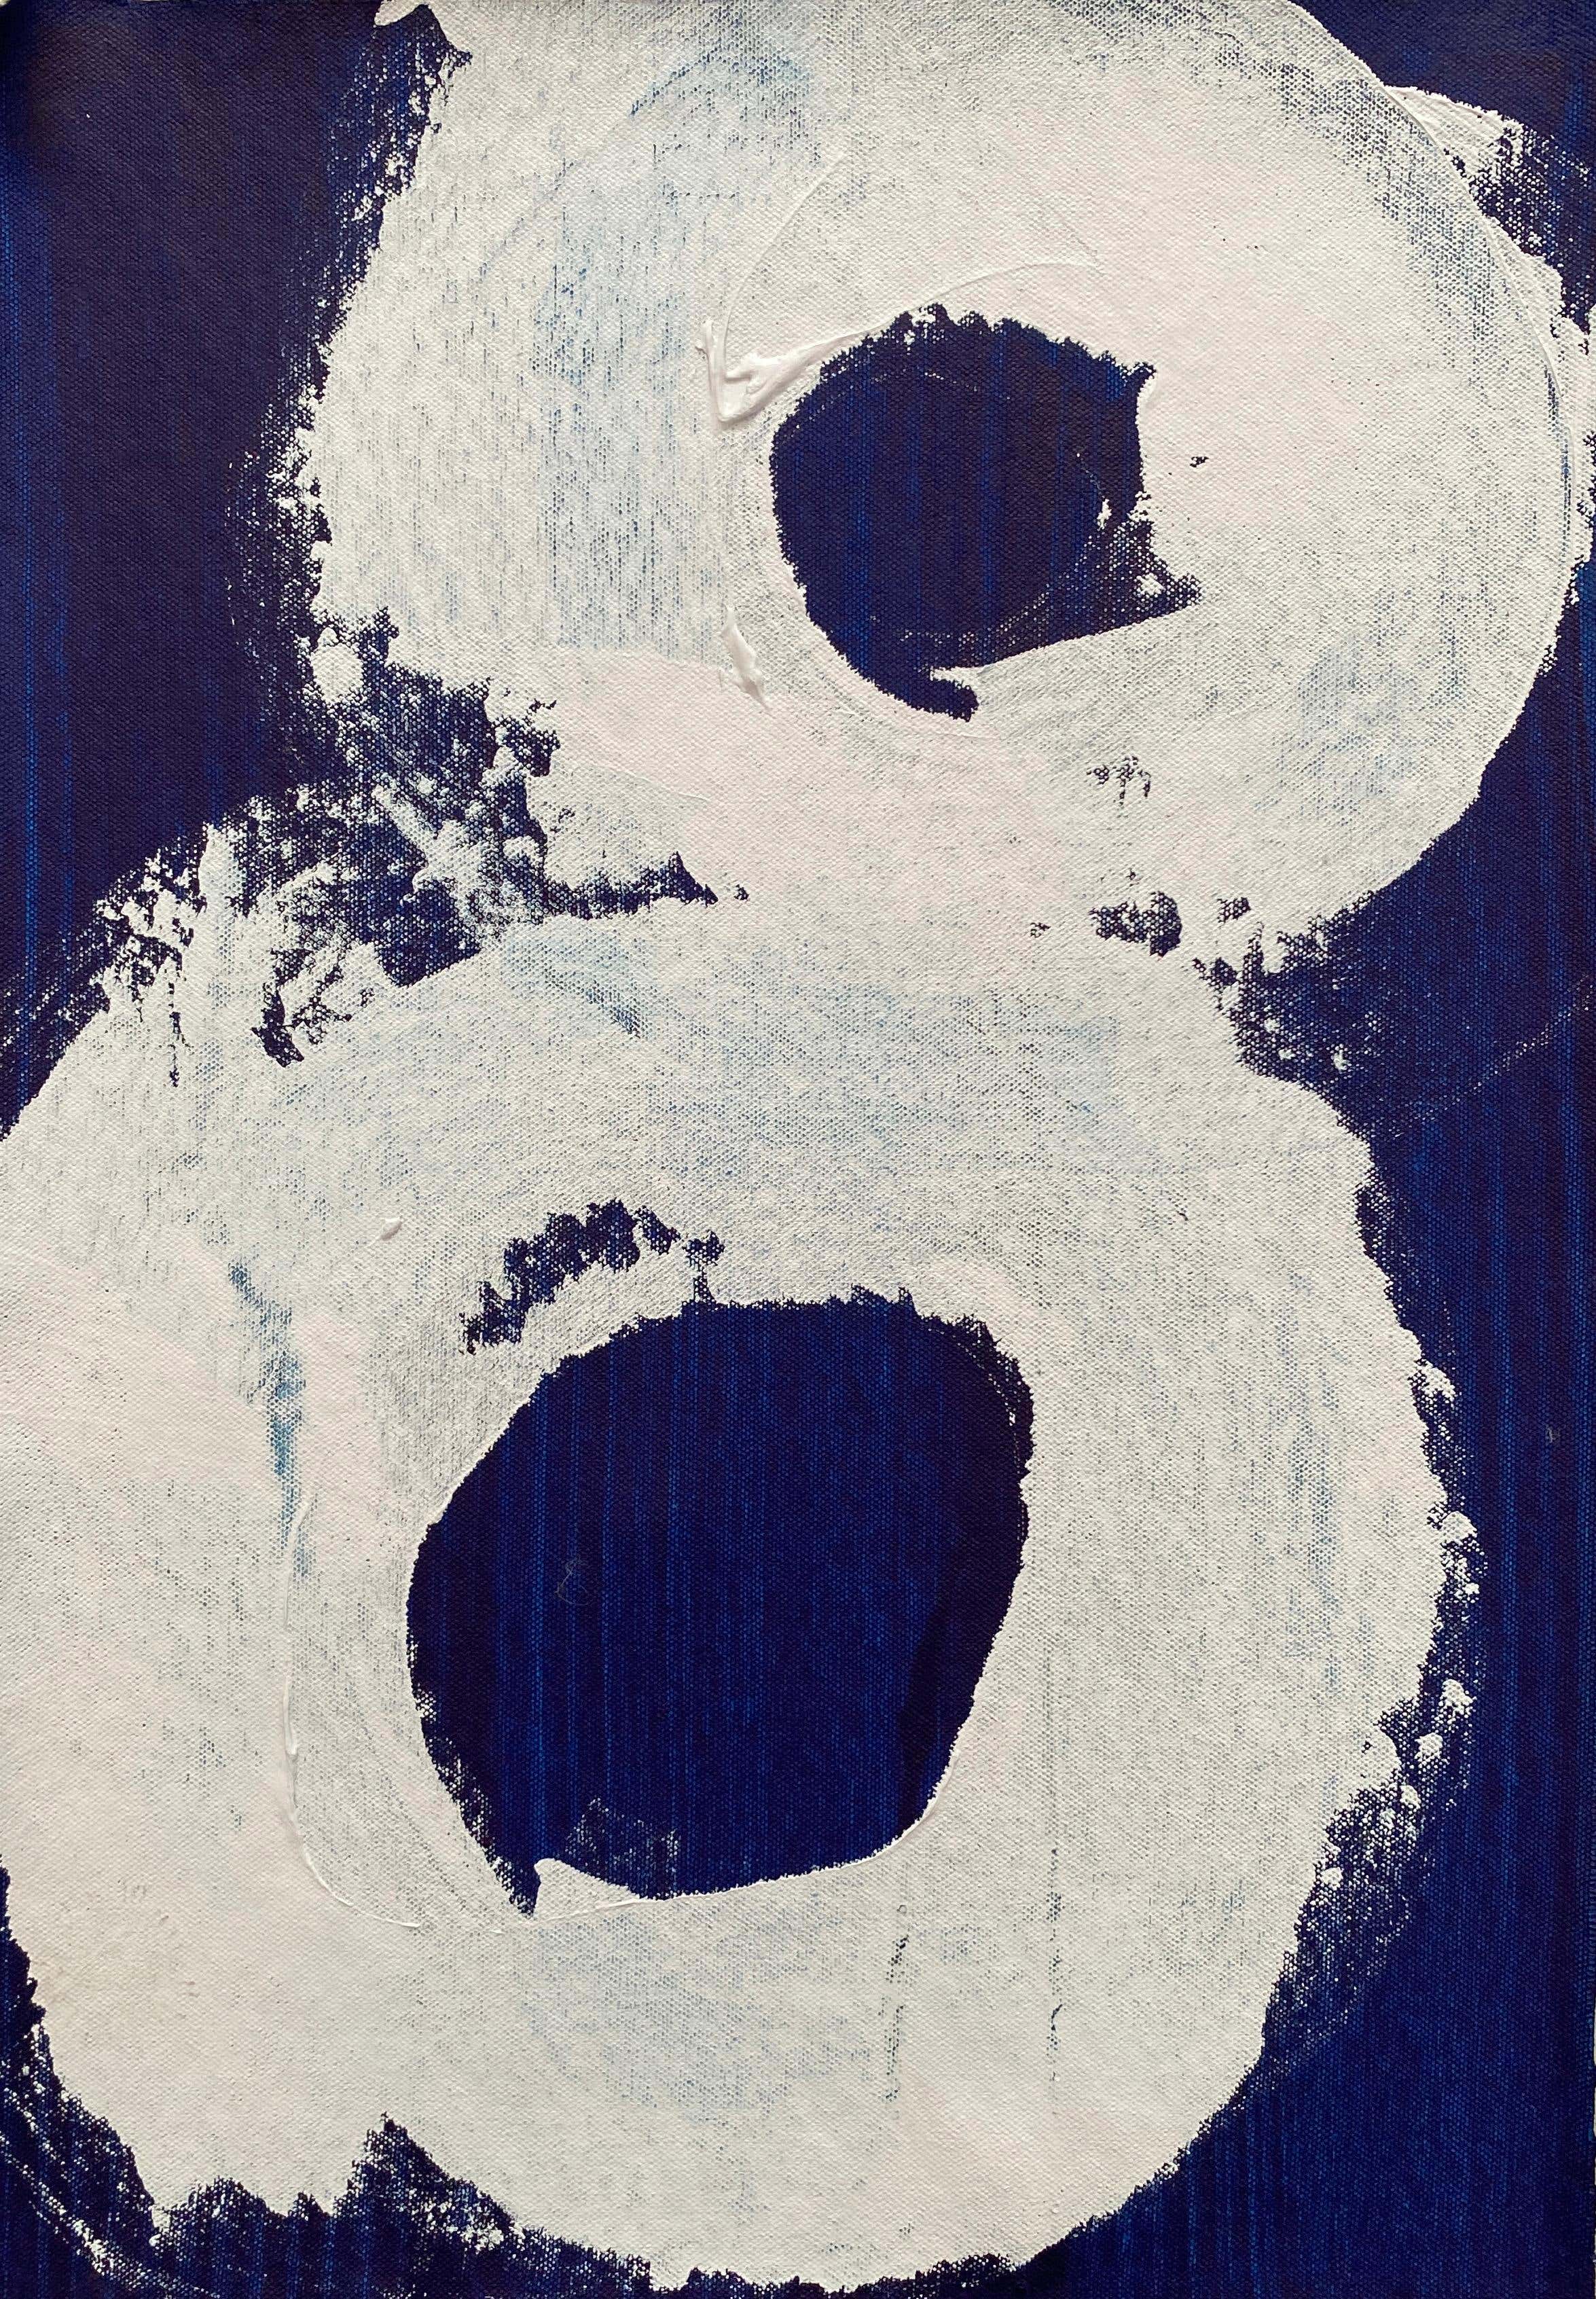 Simboli astratti minimalisti cerchi turbinii grigi bianchi dipinti su blu profondo no1